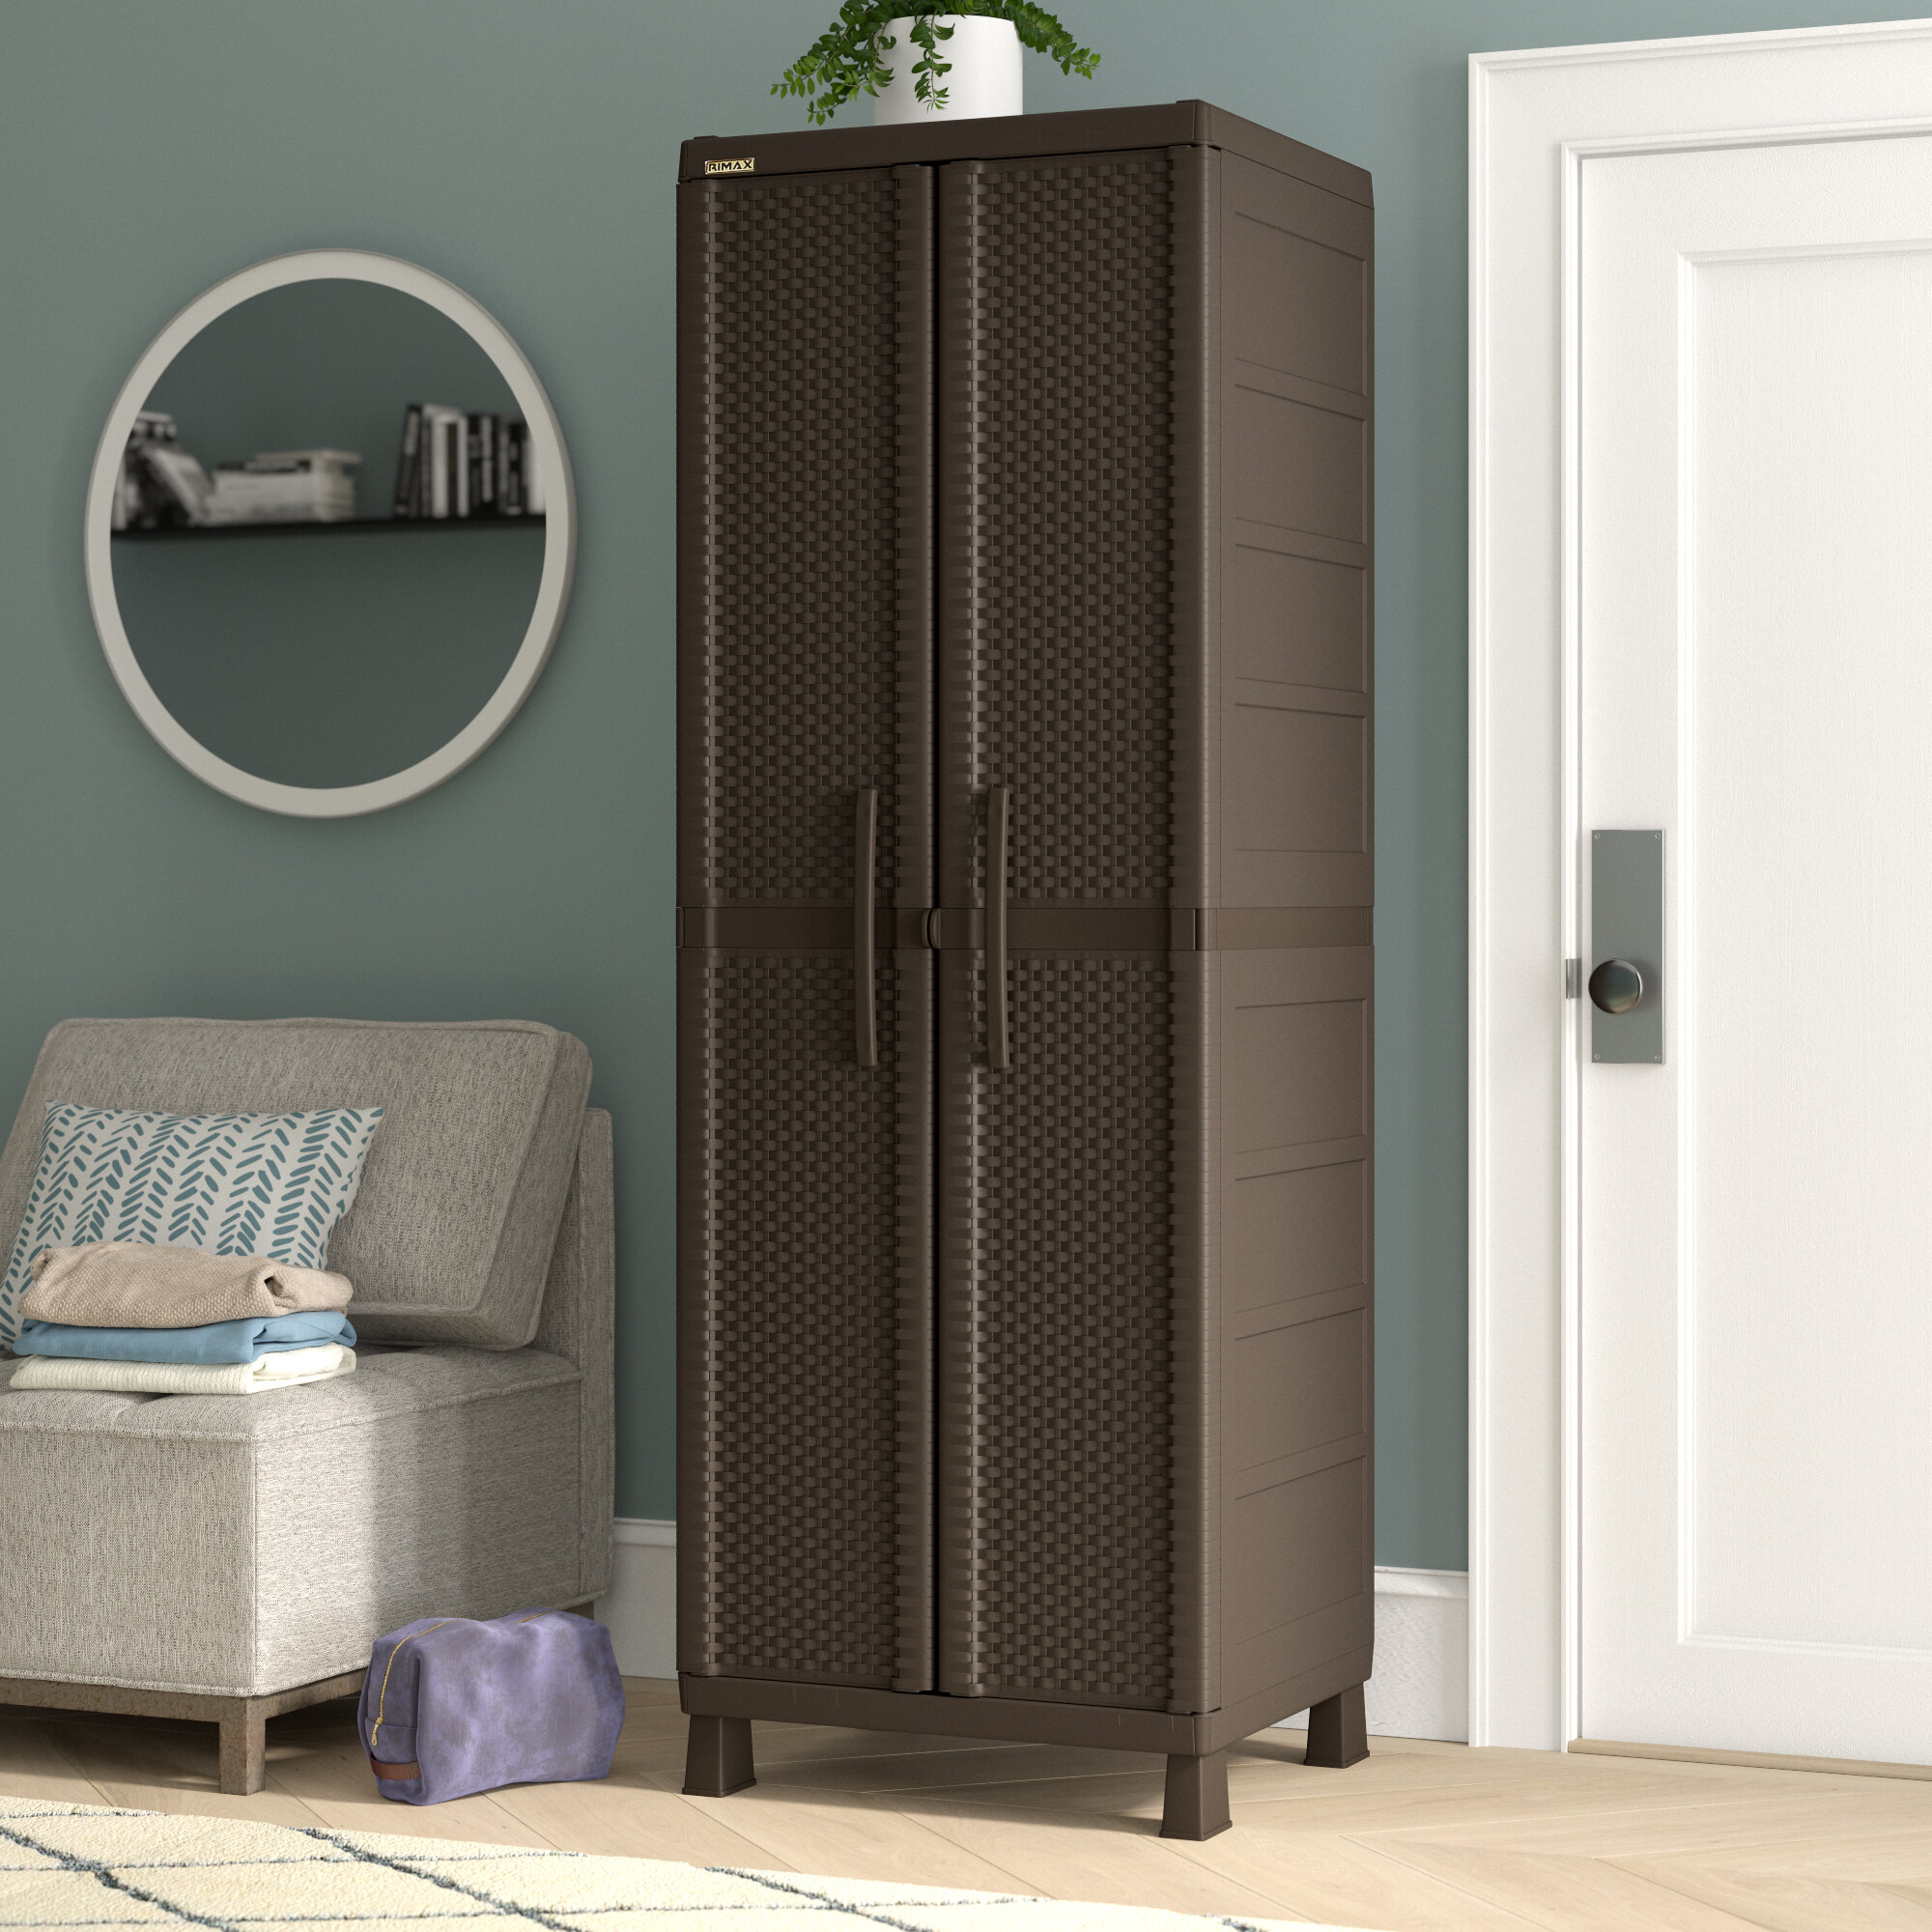  Rimax Storage Cabinets, Brown : Home & Kitchen